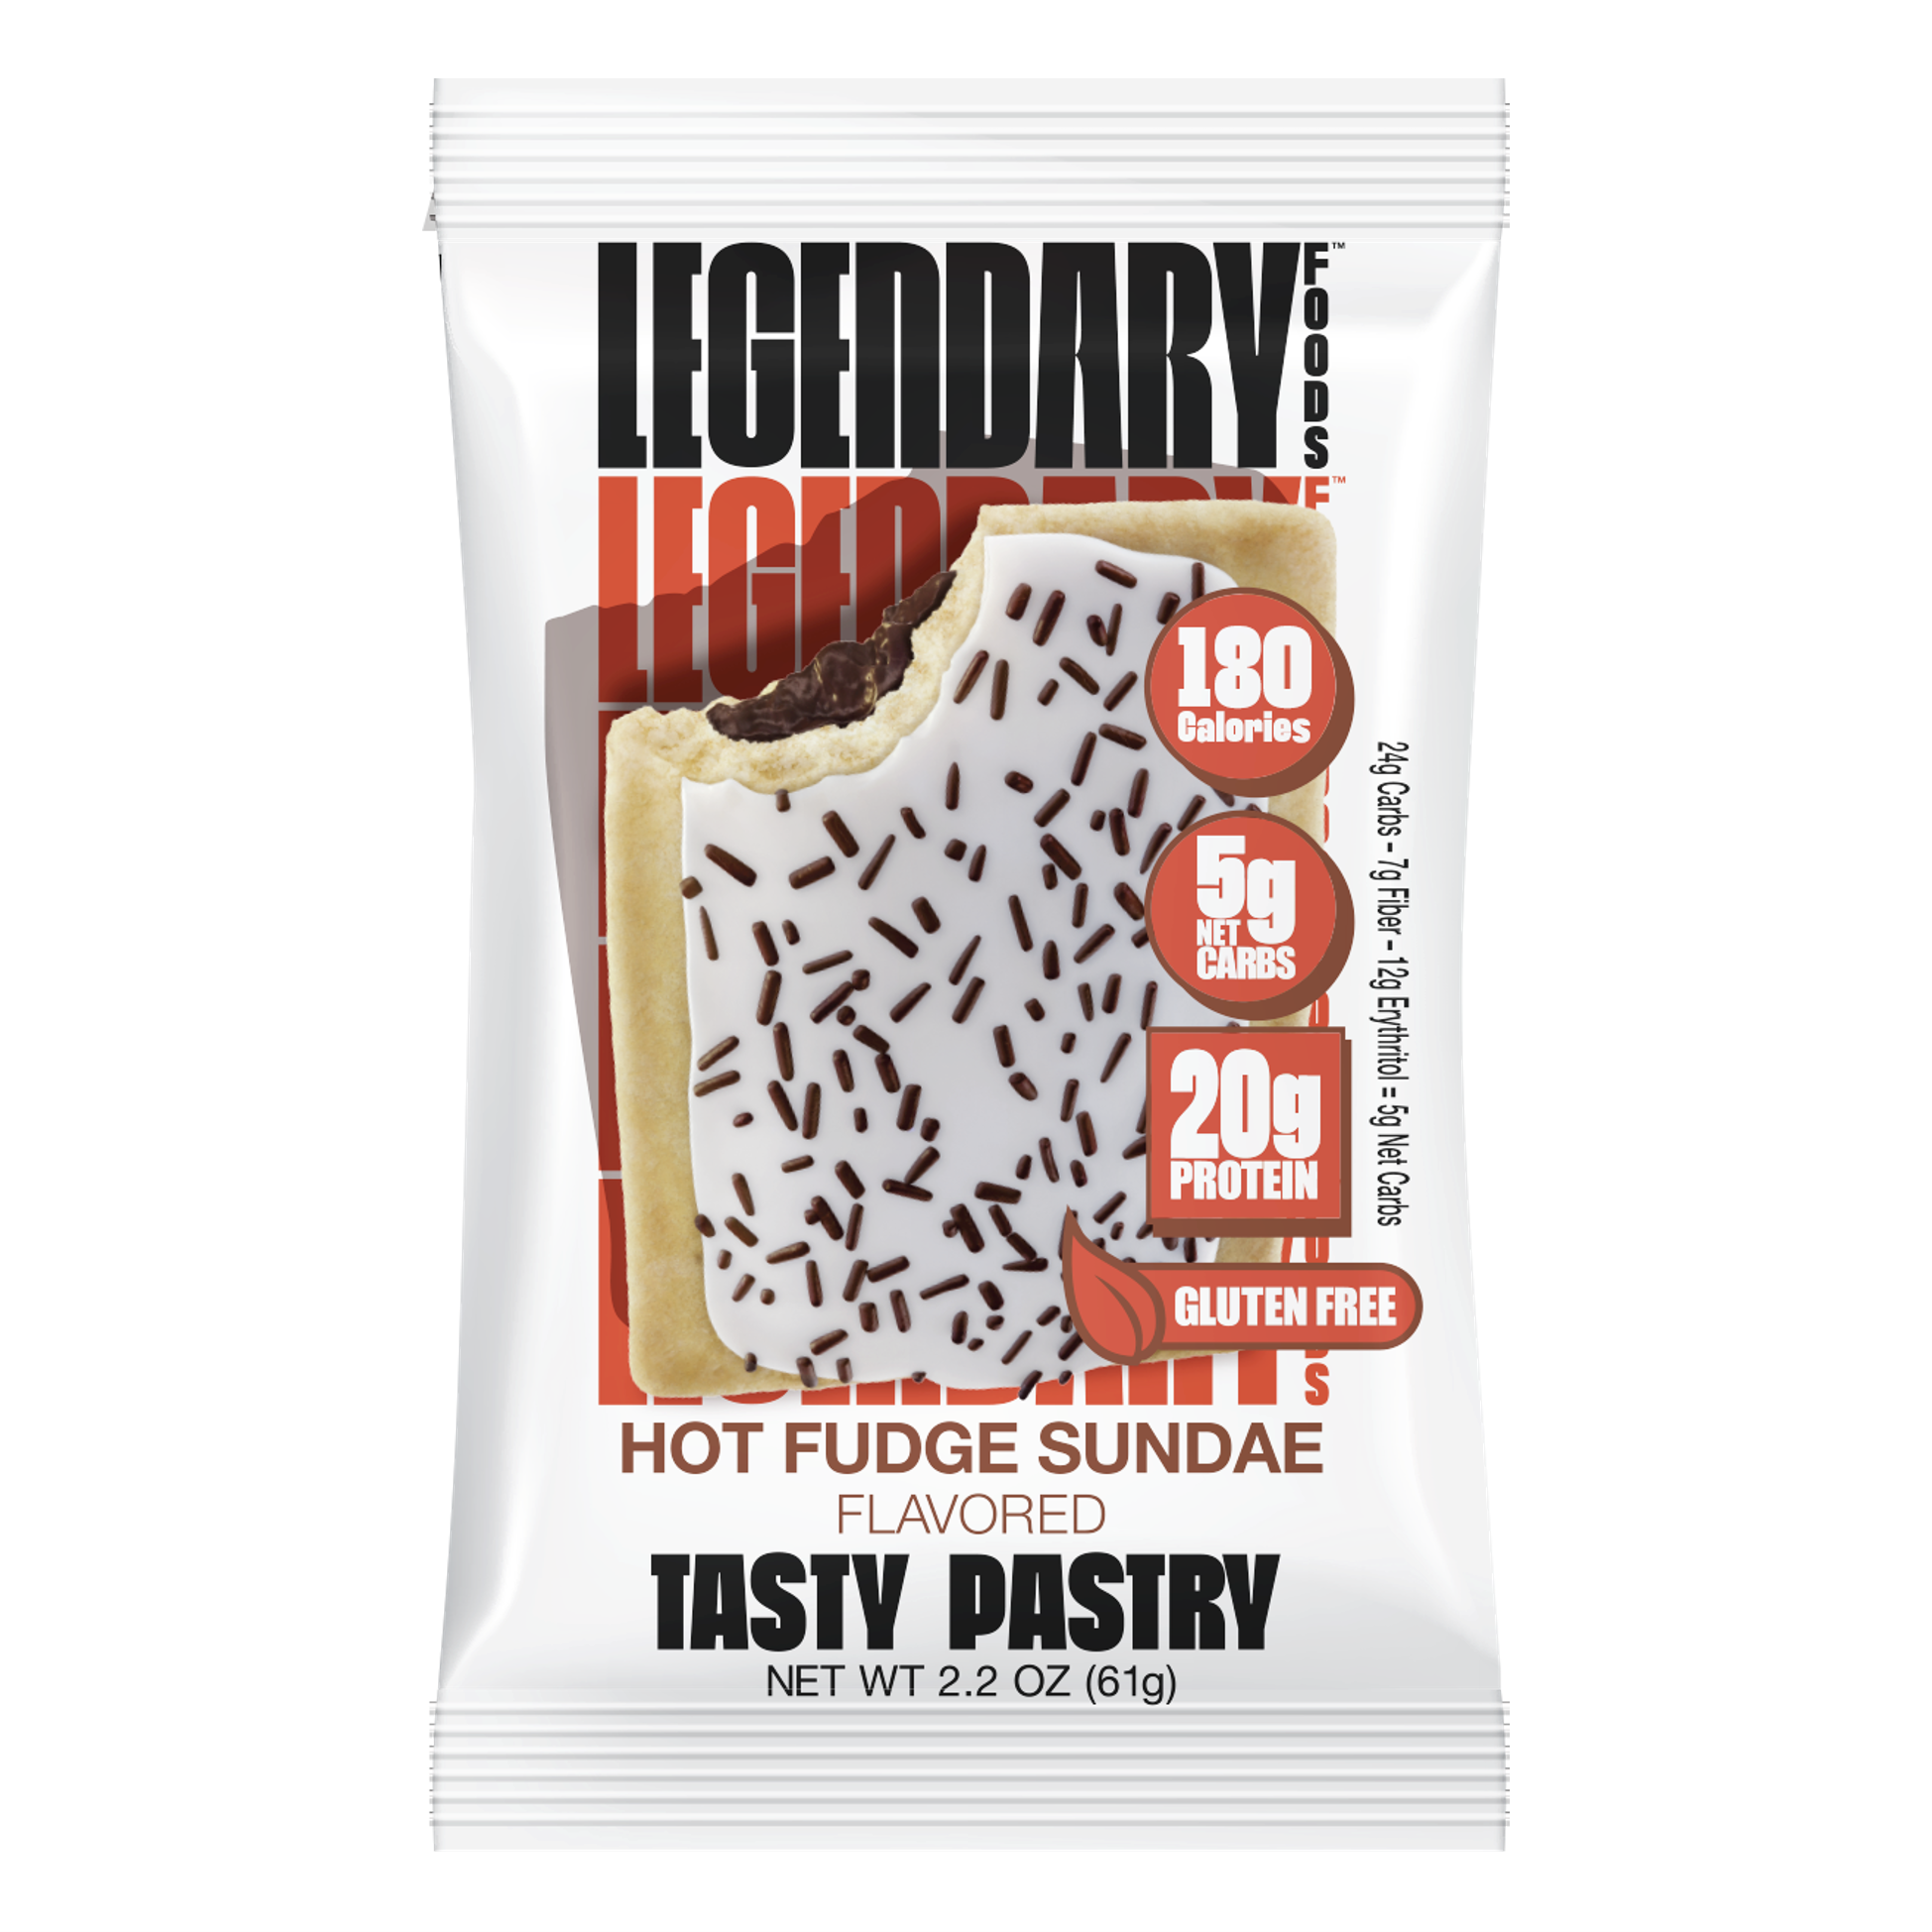 Legendary Tasty Pastry Box 8 Packs